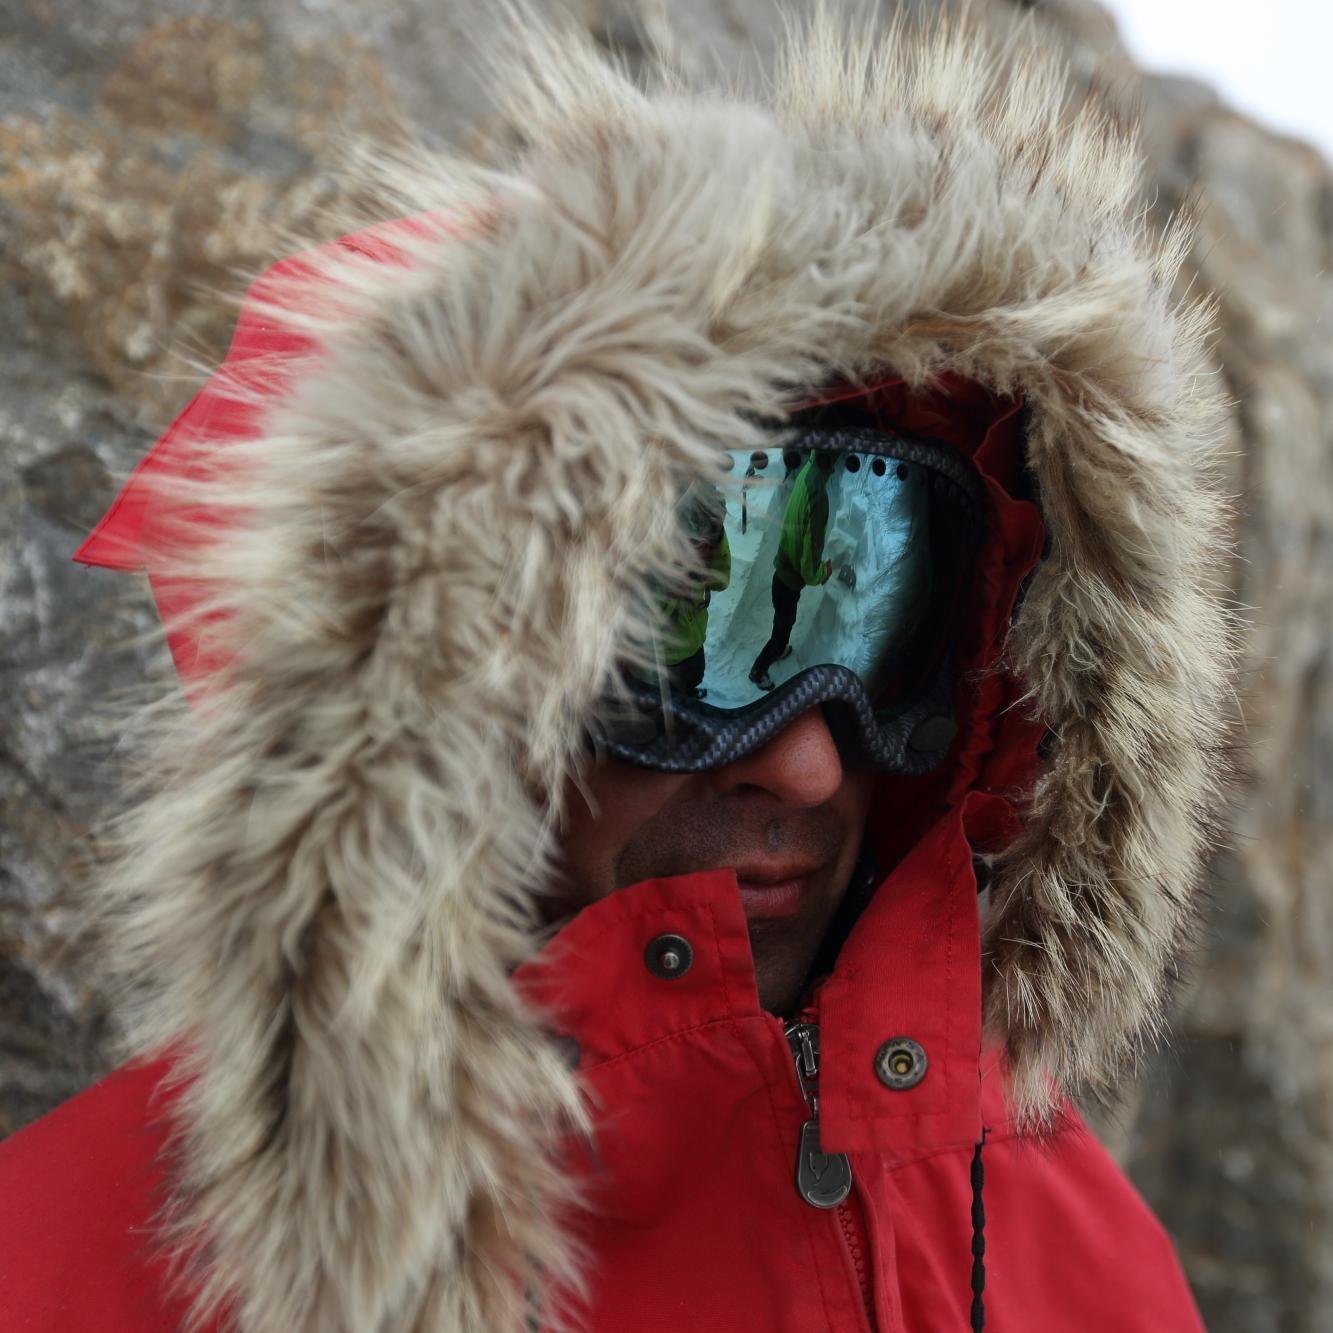 #Guide #polaire à @Terres_oubliees, créateur de #voyages en #arctique à #ski ; #kayak et #plongée 📷https://t.co/Ouc8gr4Raq